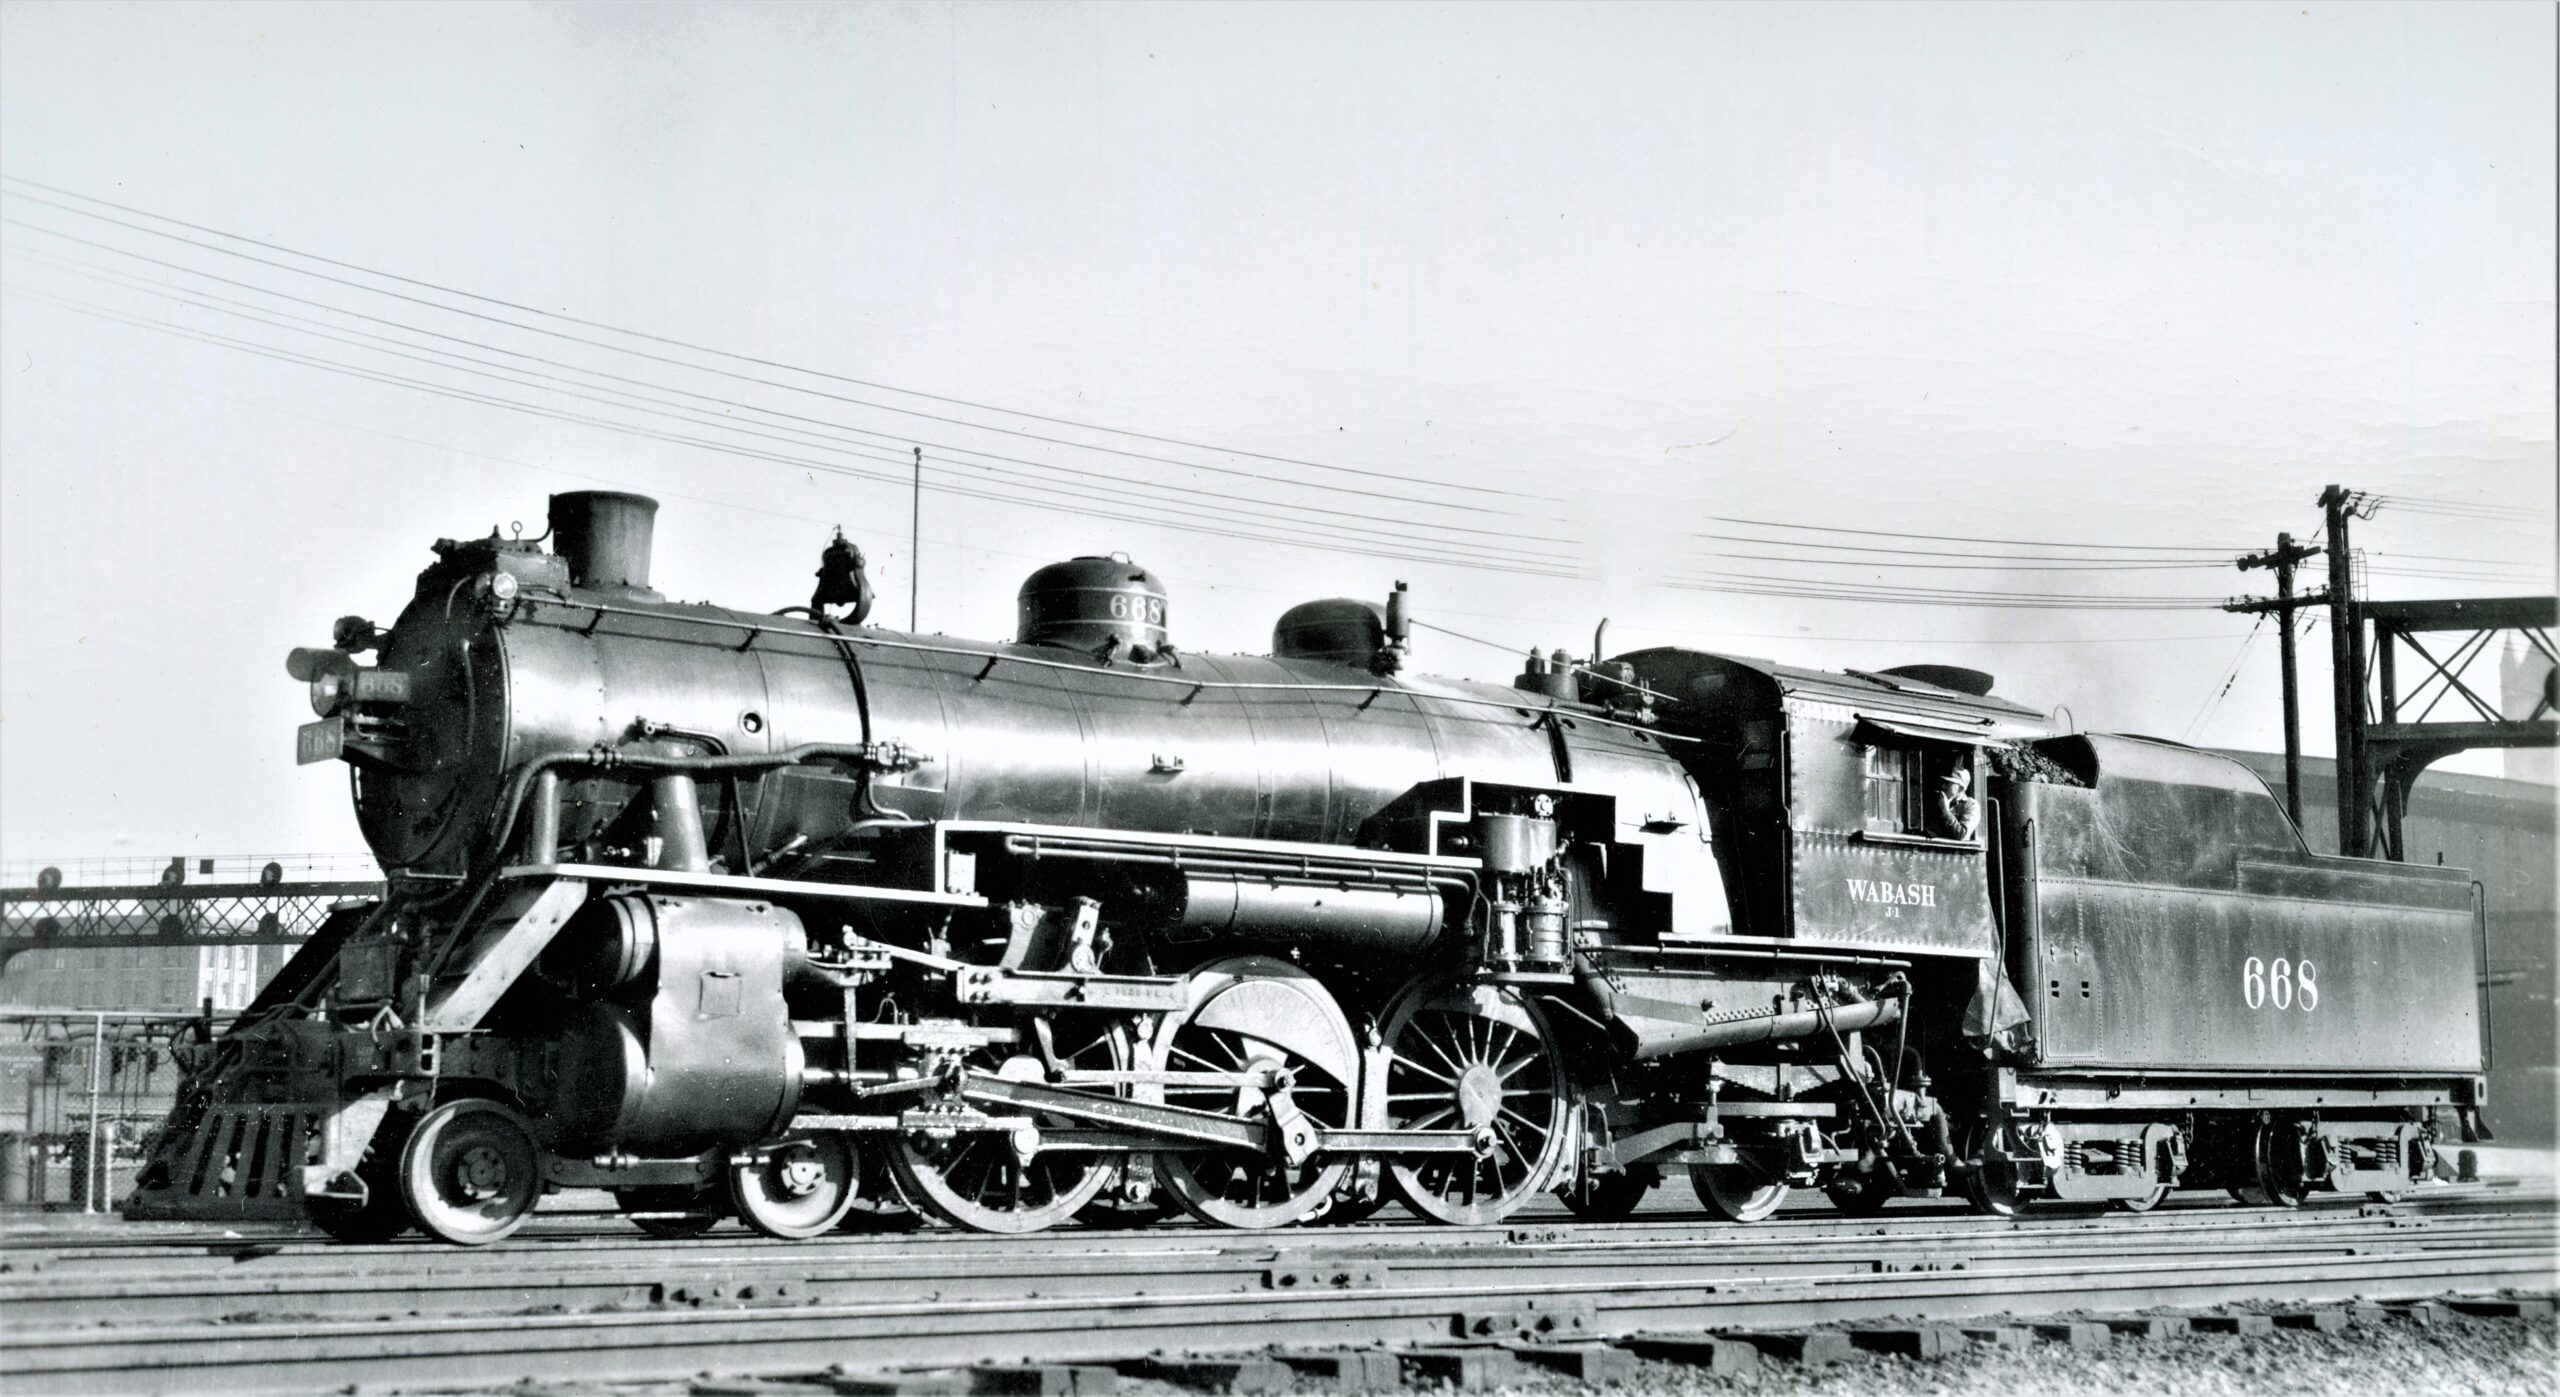 Wabash Railroad | Saint Louis, Missouri | Class J-1 4-6-2 #668 steam locomotive | April 12, 1946 | Robert P. Morris photograph | Elmer Kremkow Collection